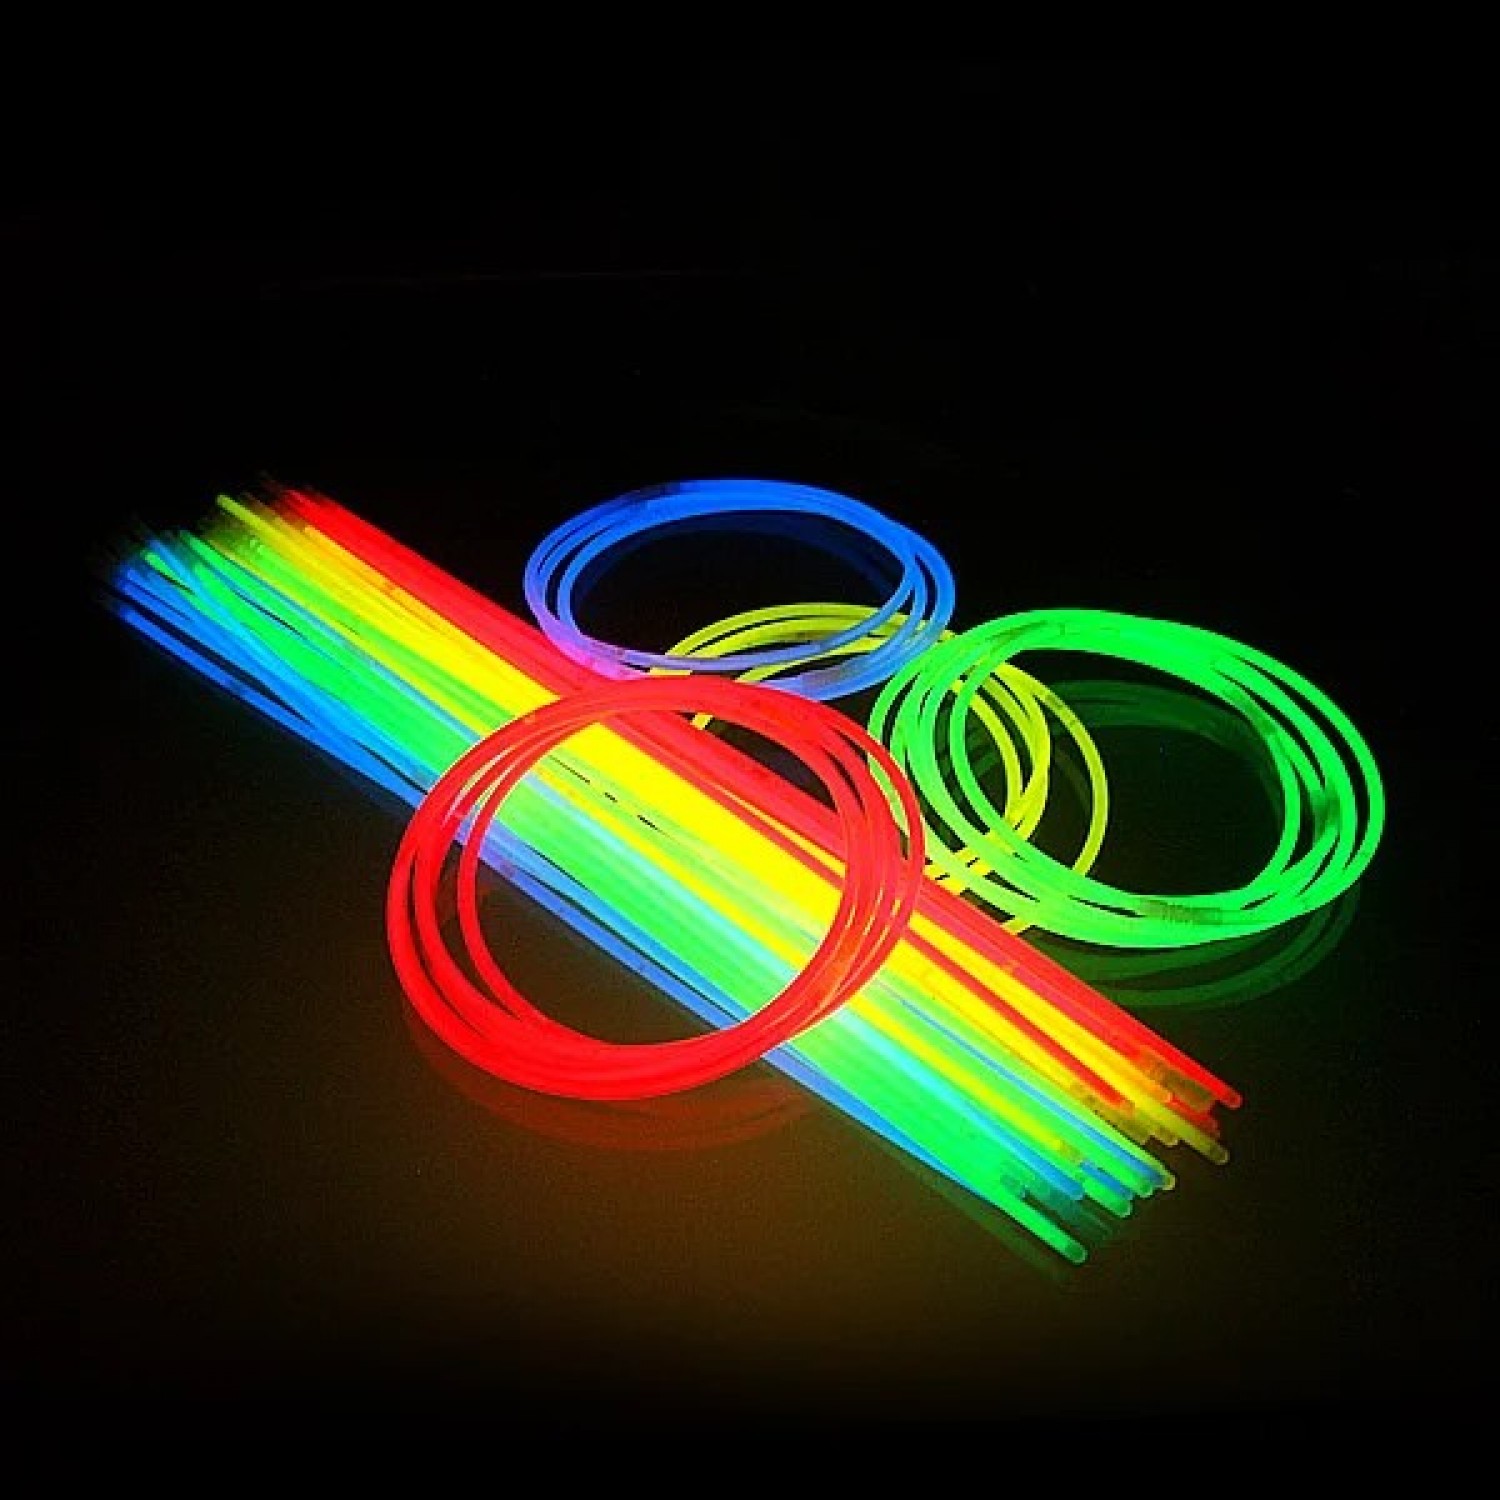 Luminiscējošie kociņi  Glow sticks NECK (6x580mm, 4 krāsas, 50 gab.)